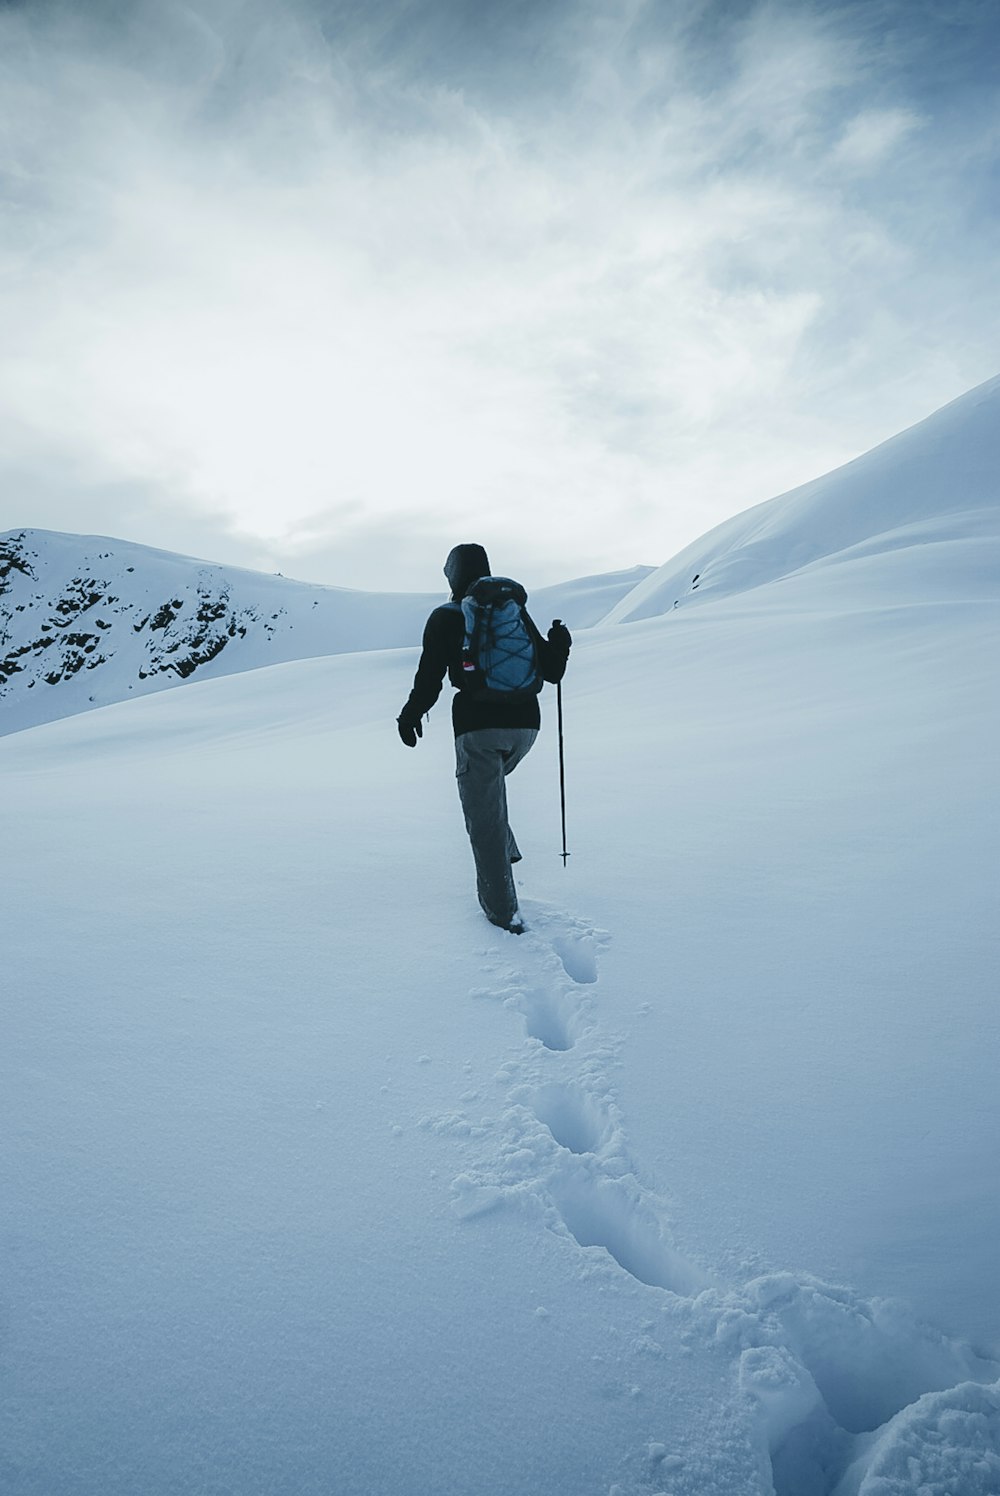 Ein Mann geht über ein schneebedecktes Feld